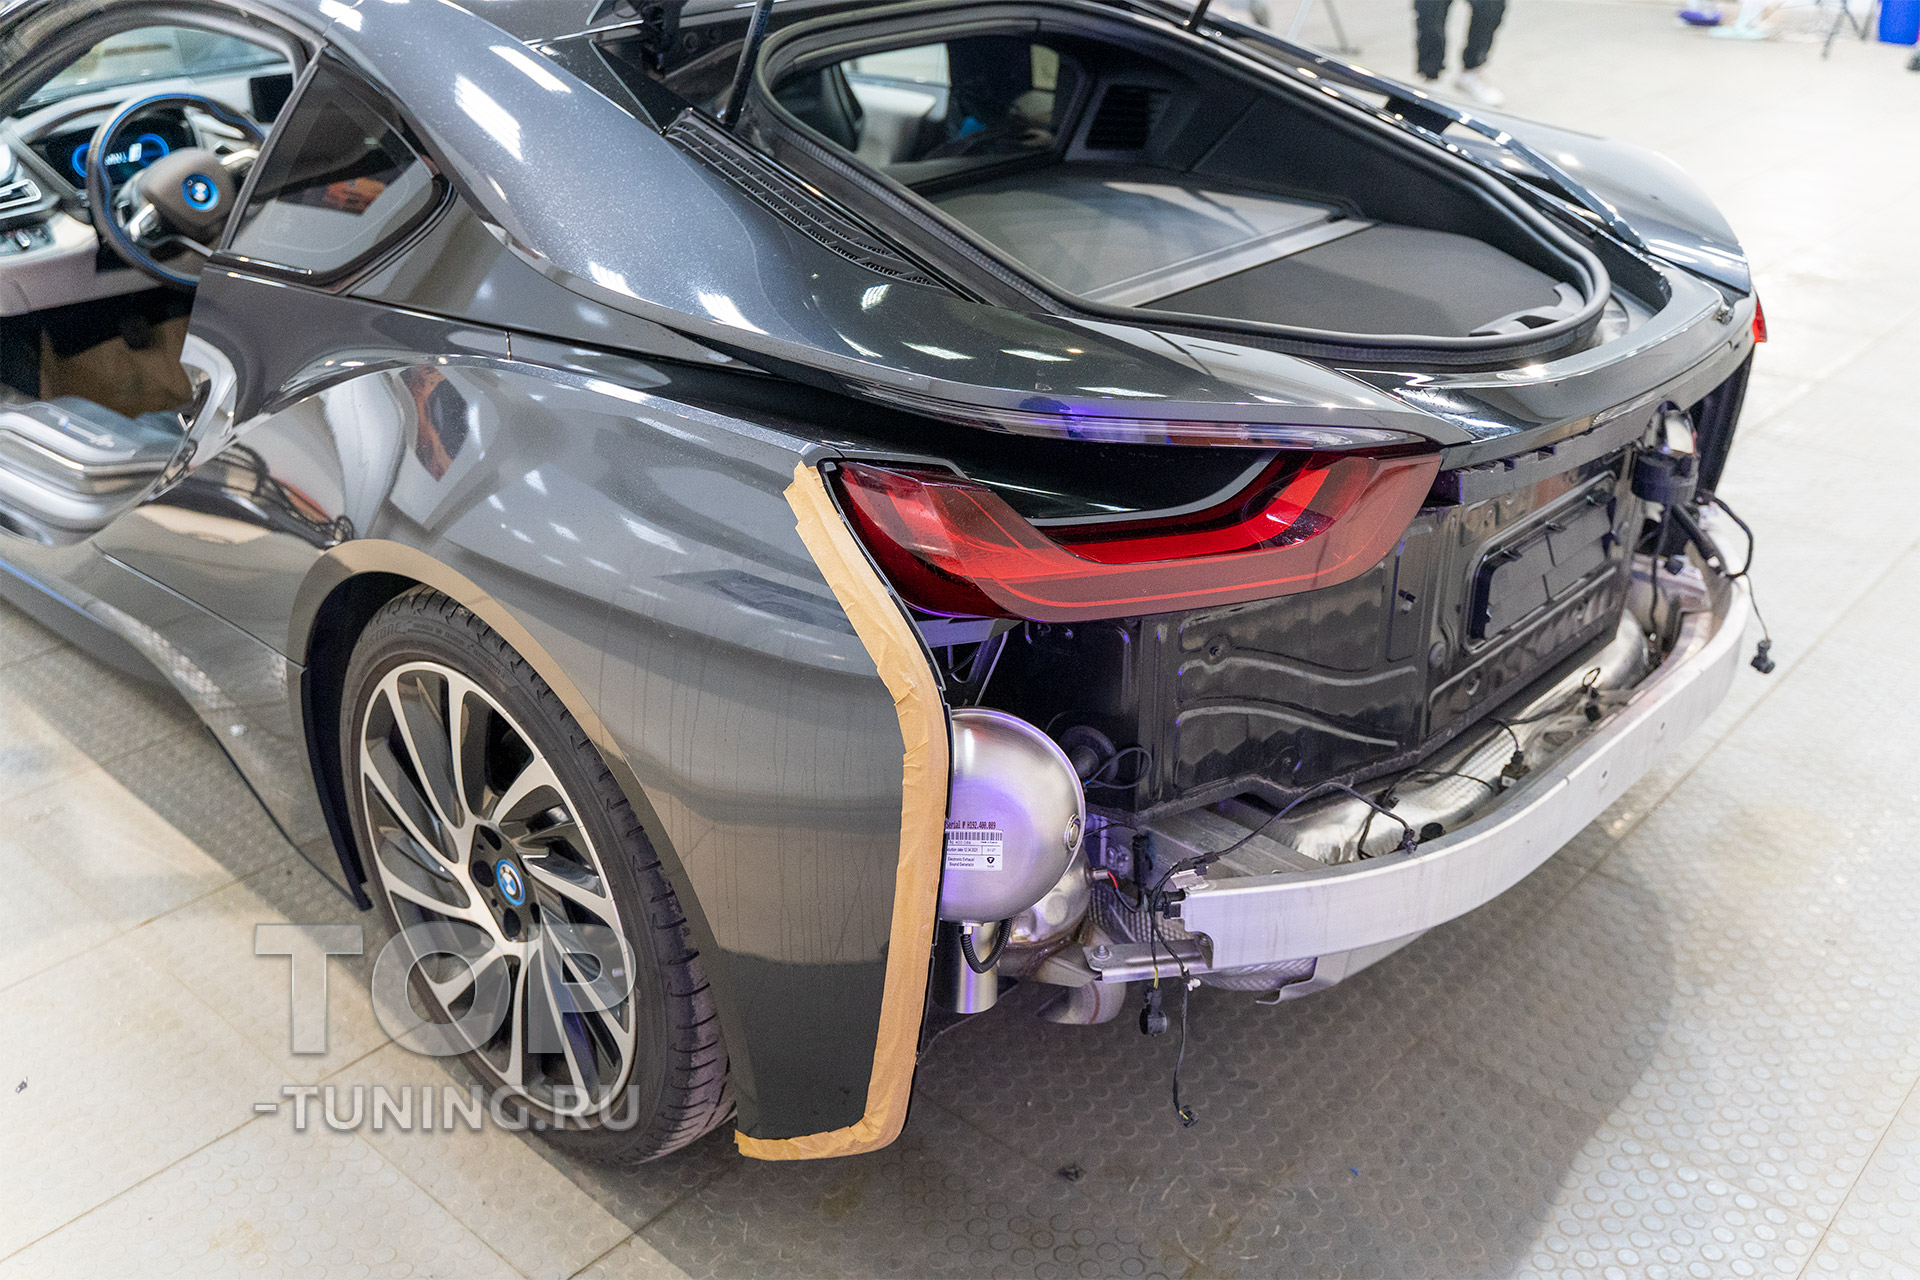 Thor Exhoust System – тюнинг выхлопной системы для BMW i8